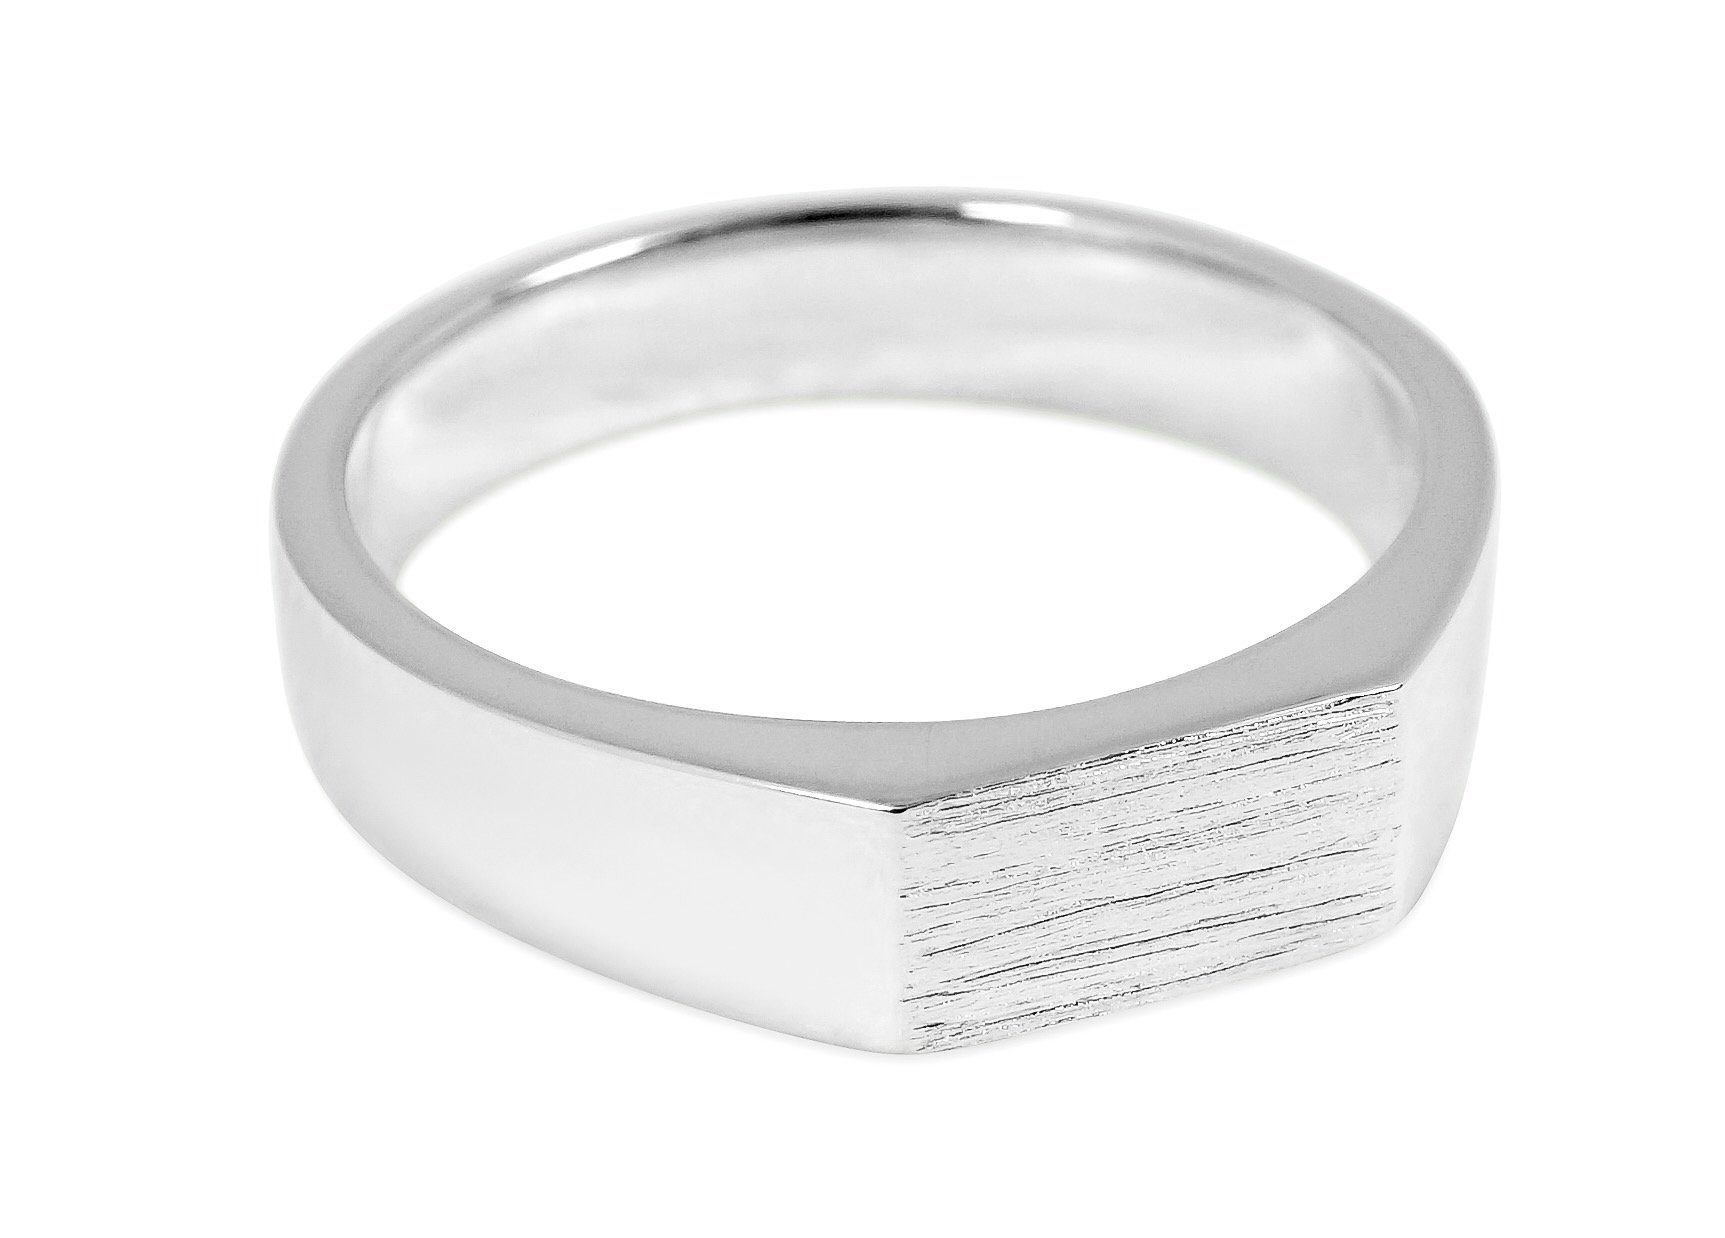 Designed Silber Fashion Sprezzi in Germany Gold Ring Silber Sterling aus Herren und eckig, 925 Sterling Fingerring aus Silver, Silberring handgefertigt,